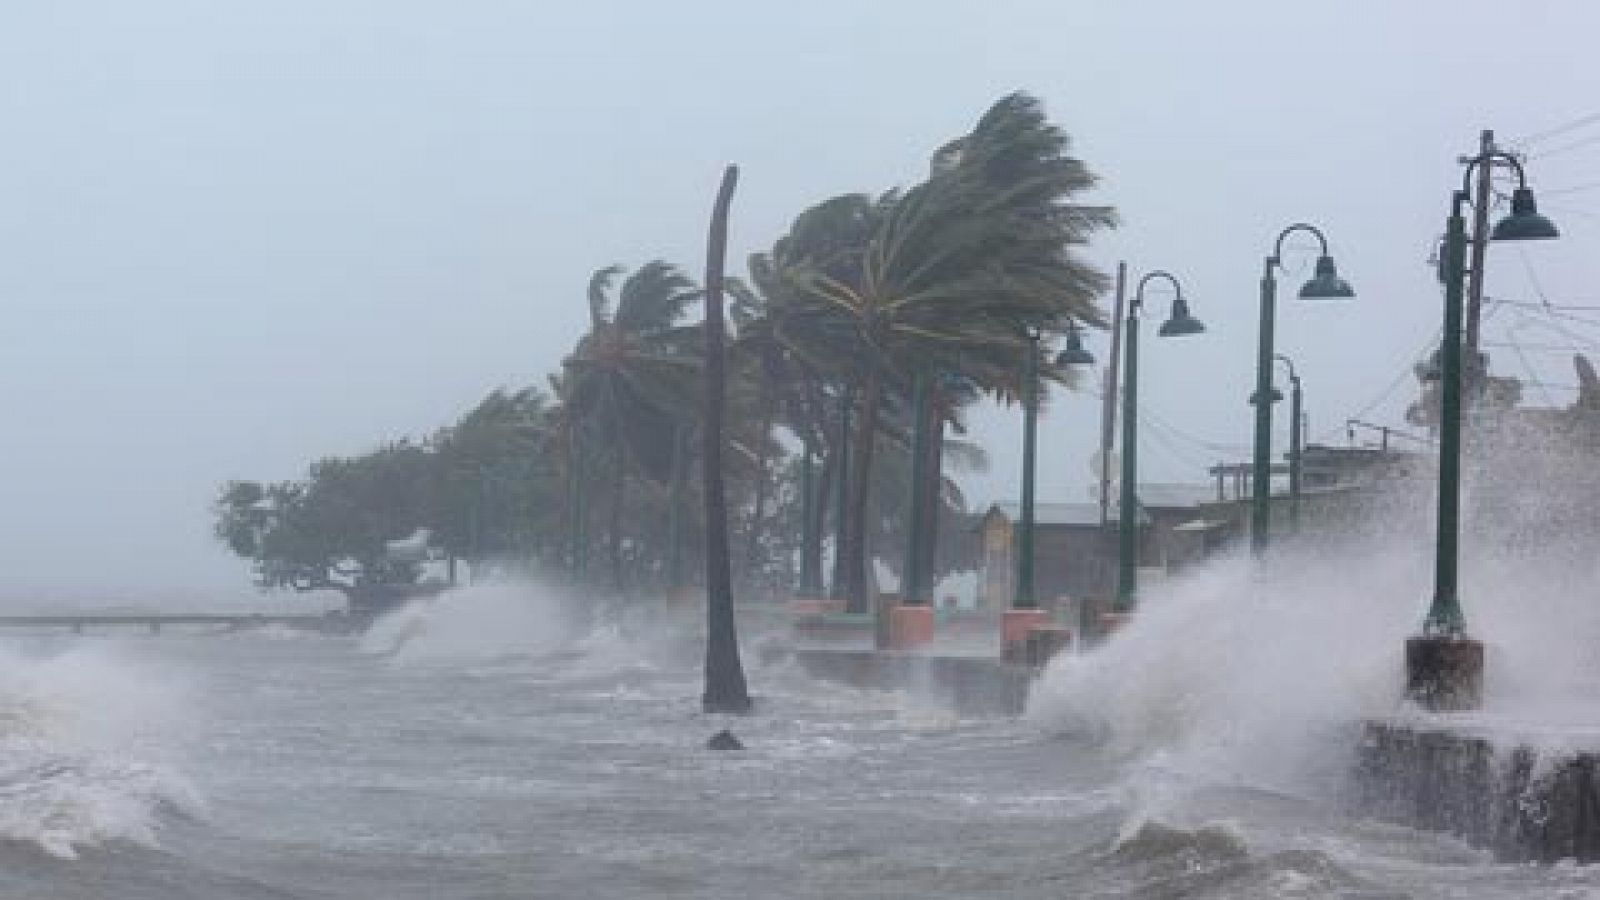 El huracán Irma entra en Puerto Rico tras una "devastación total" en las Antillas Menores